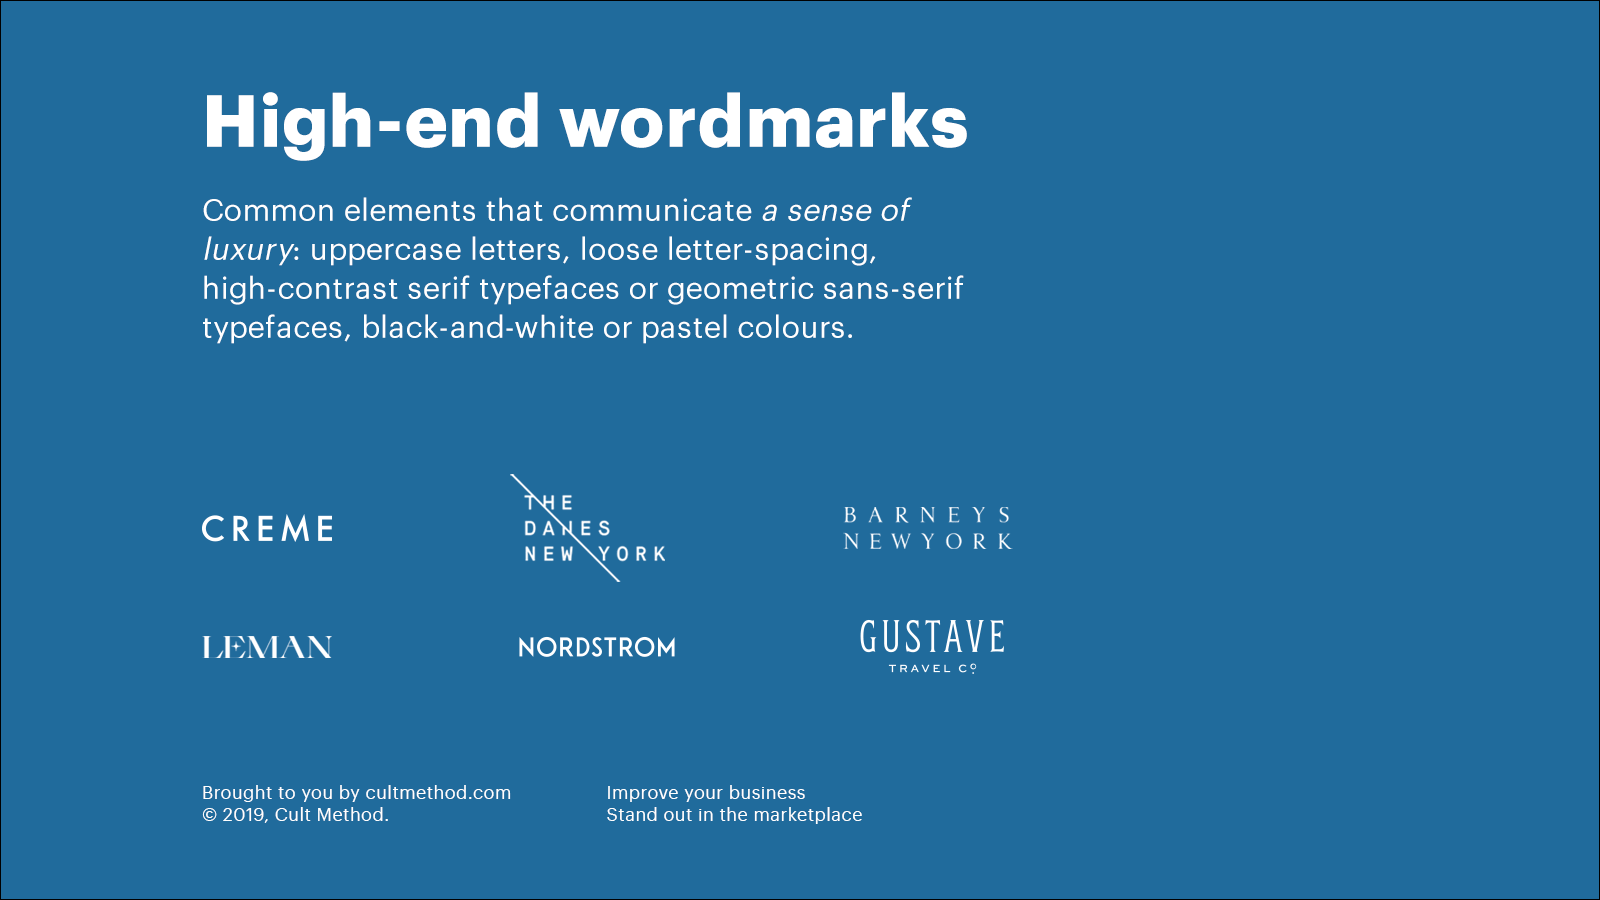 High-end wordmark logos